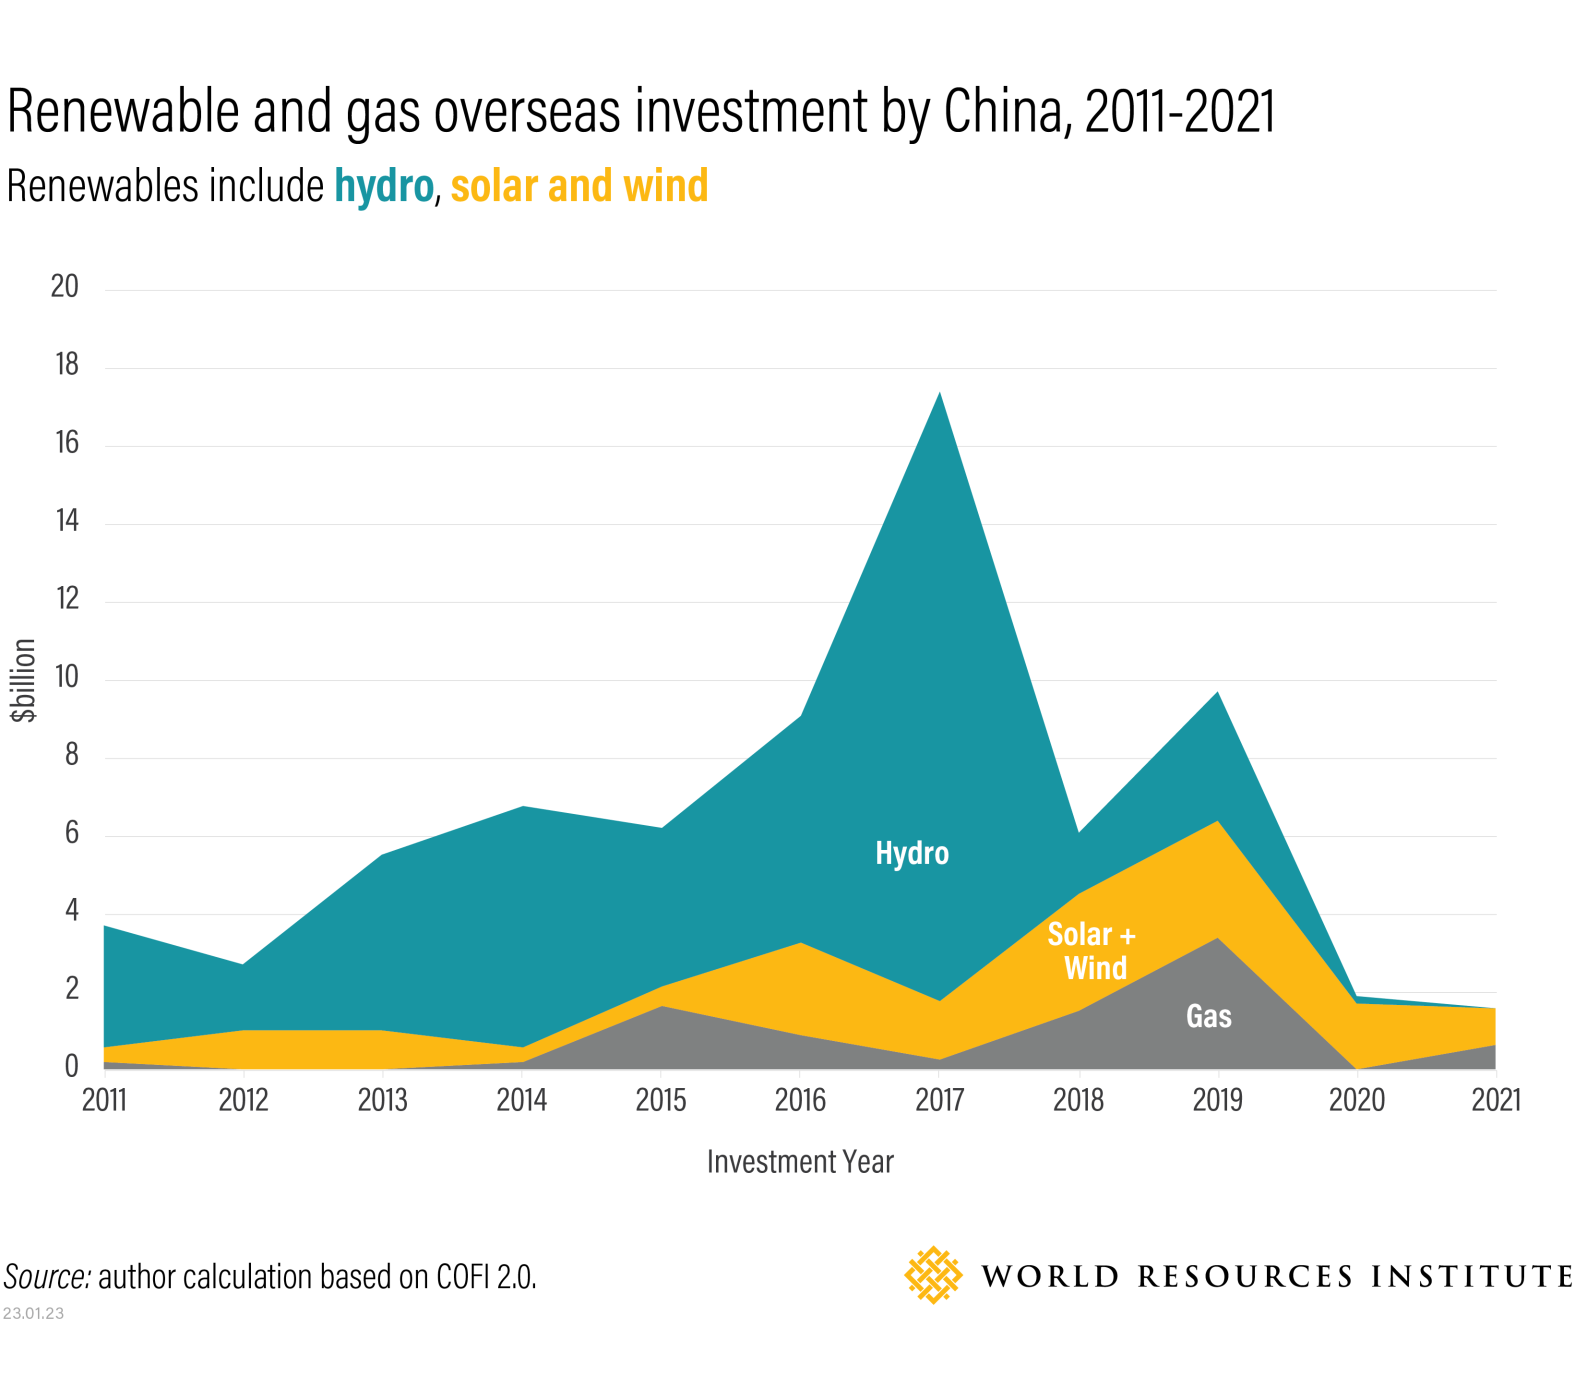 Επένδυση της Κίνας σε ανανεώσιμες πηγές ενέργειας και φυσικό αέριο στο εξωτερικό 2011-2021